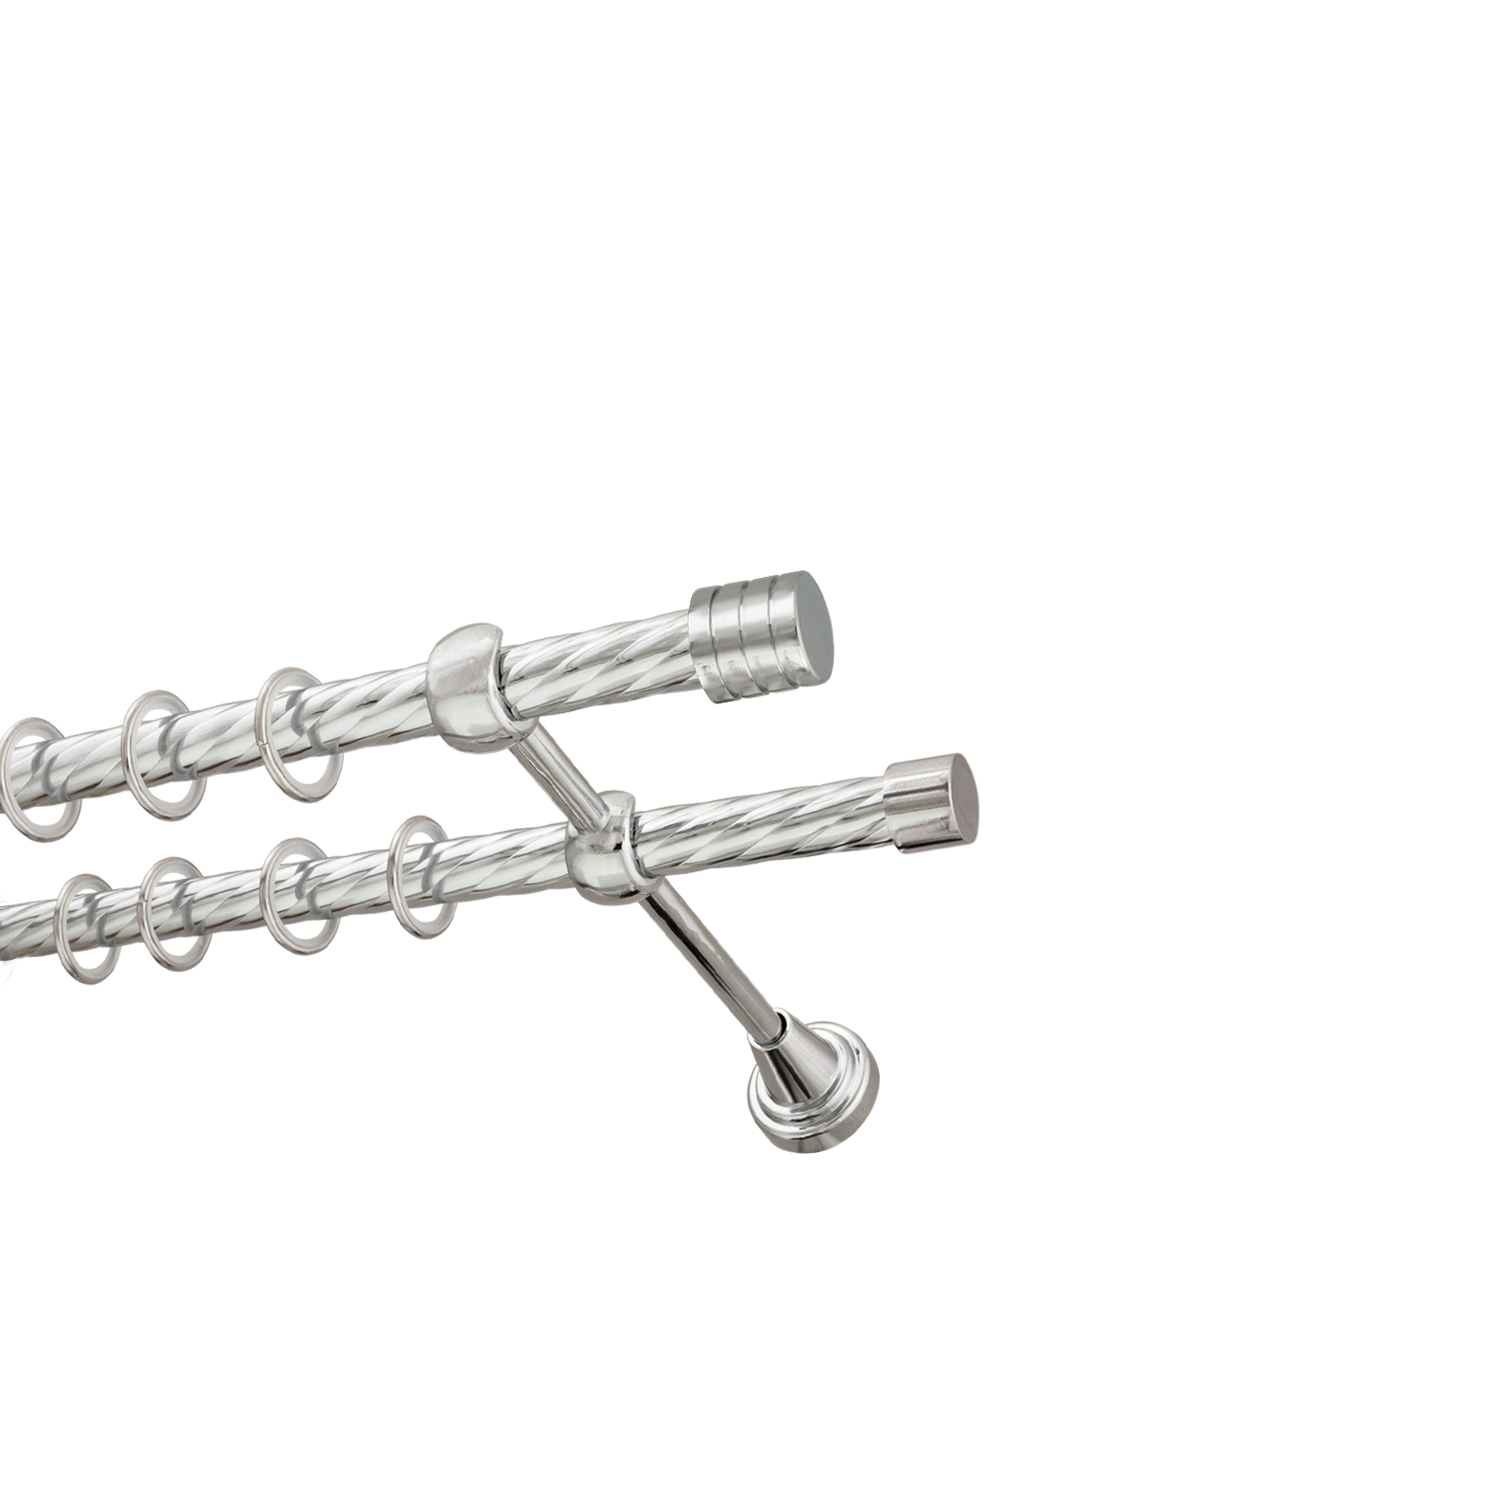 Металлический карниз для штор Подиум, двухрядный 16/16 мм, серебро, витая штанга, длина 240 см - фото Wikidecor.ru